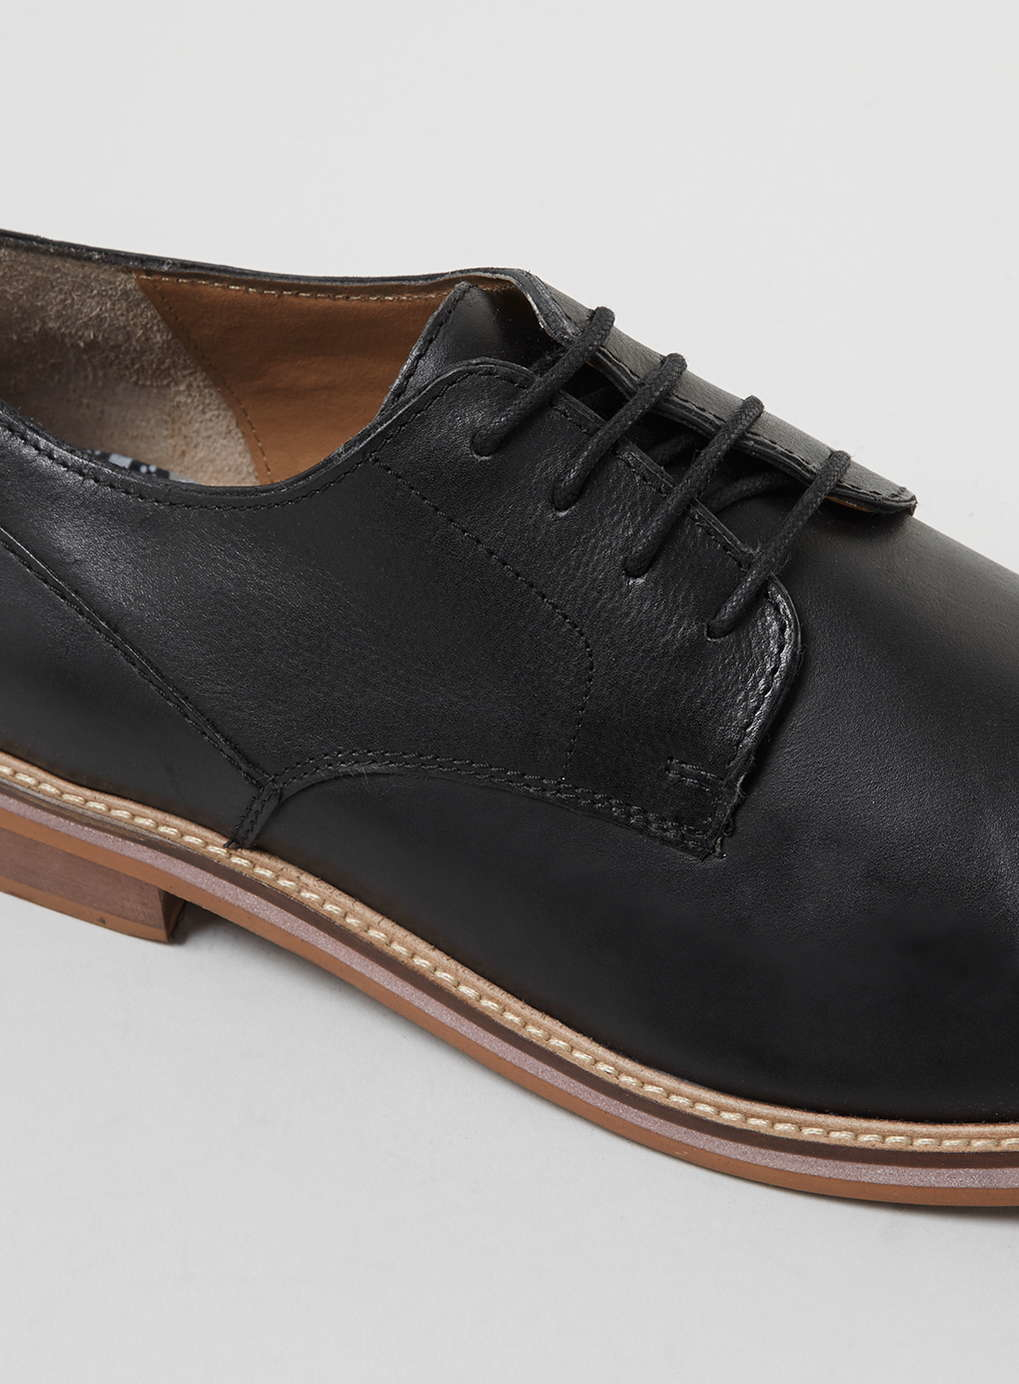 Lyst Ben Sherman Black Leather Derby Shoes in Black for Men